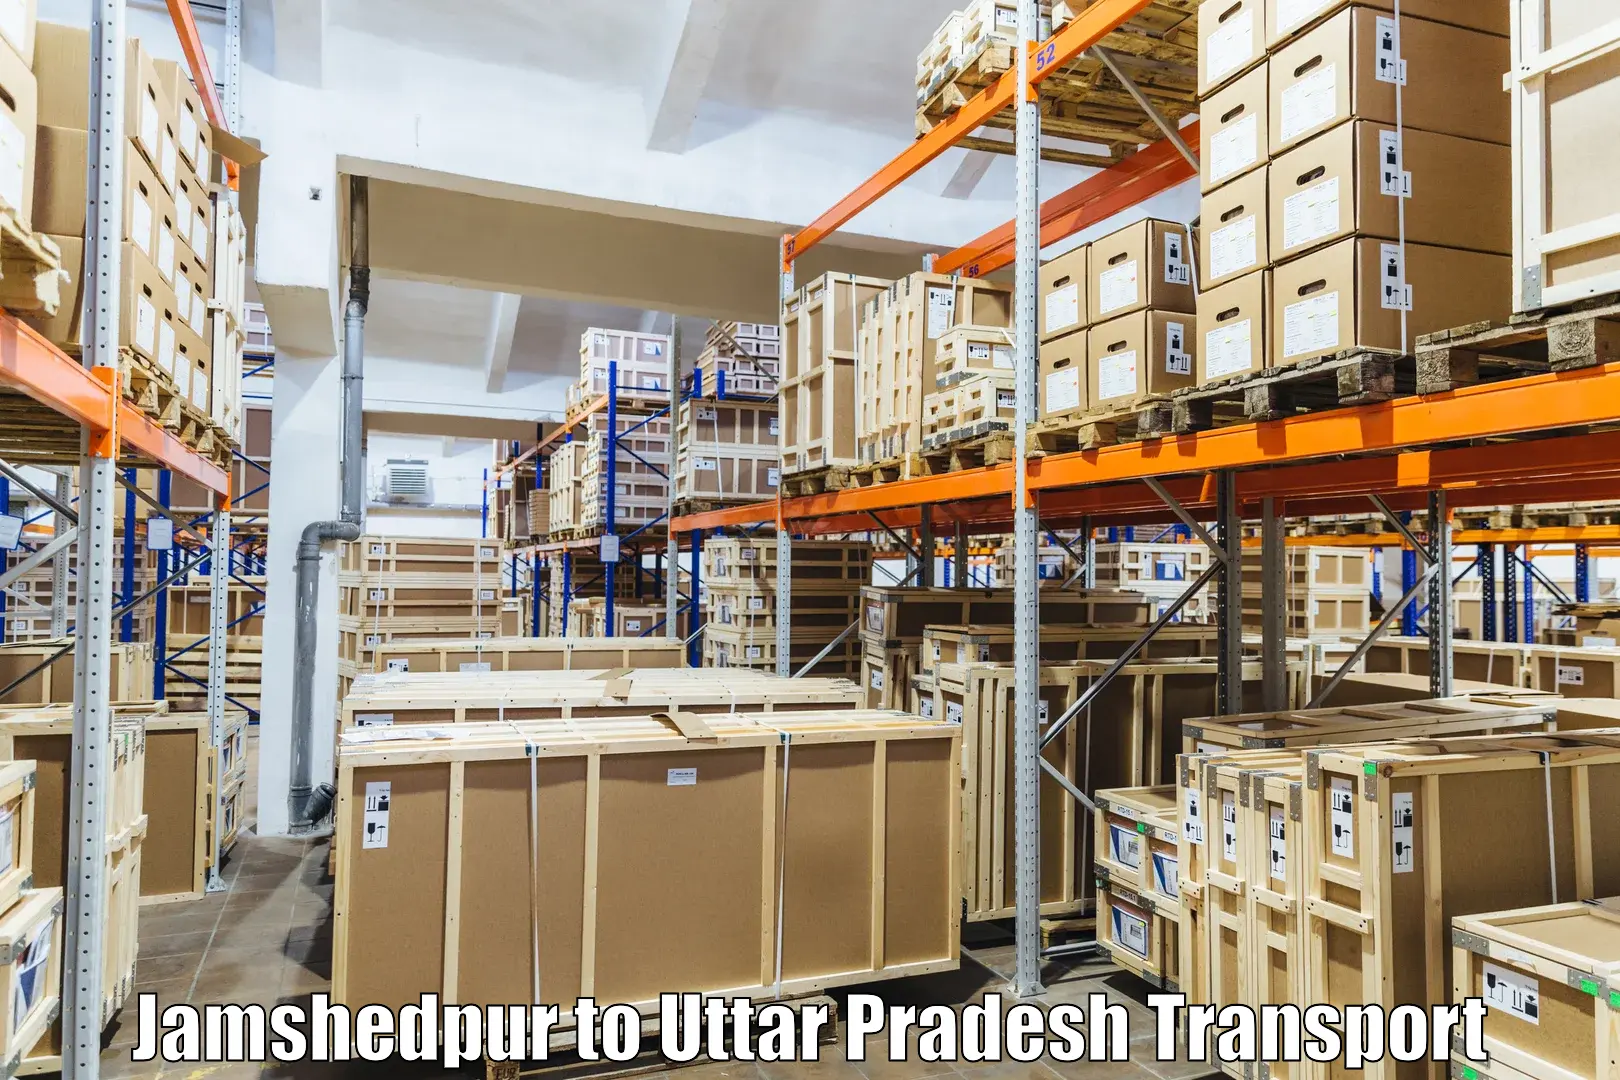 Online transport service Jamshedpur to Budhana